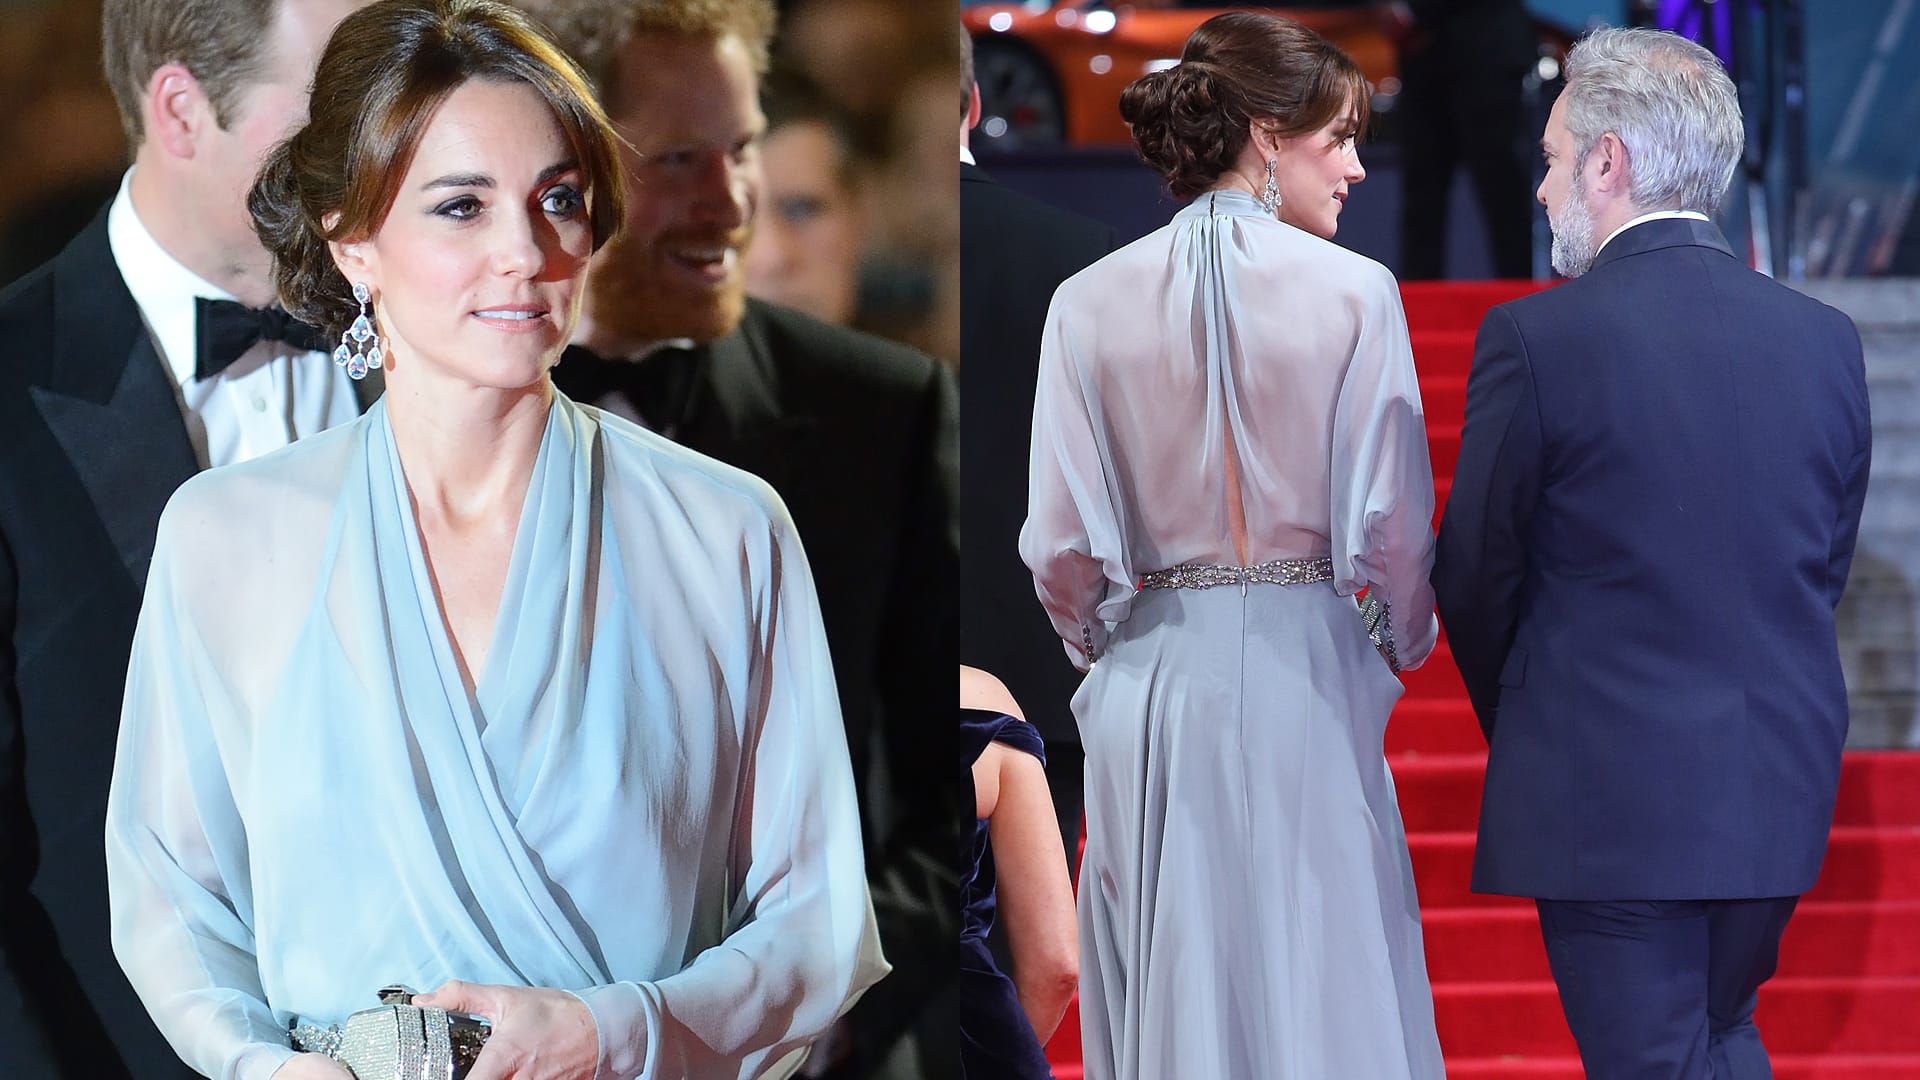 Bei der Weltpremiere des neuen James-Bond-Films "Spectre" in London trug Herzogin Kate keinen BH unter ihrem schicken blauen Kleid.